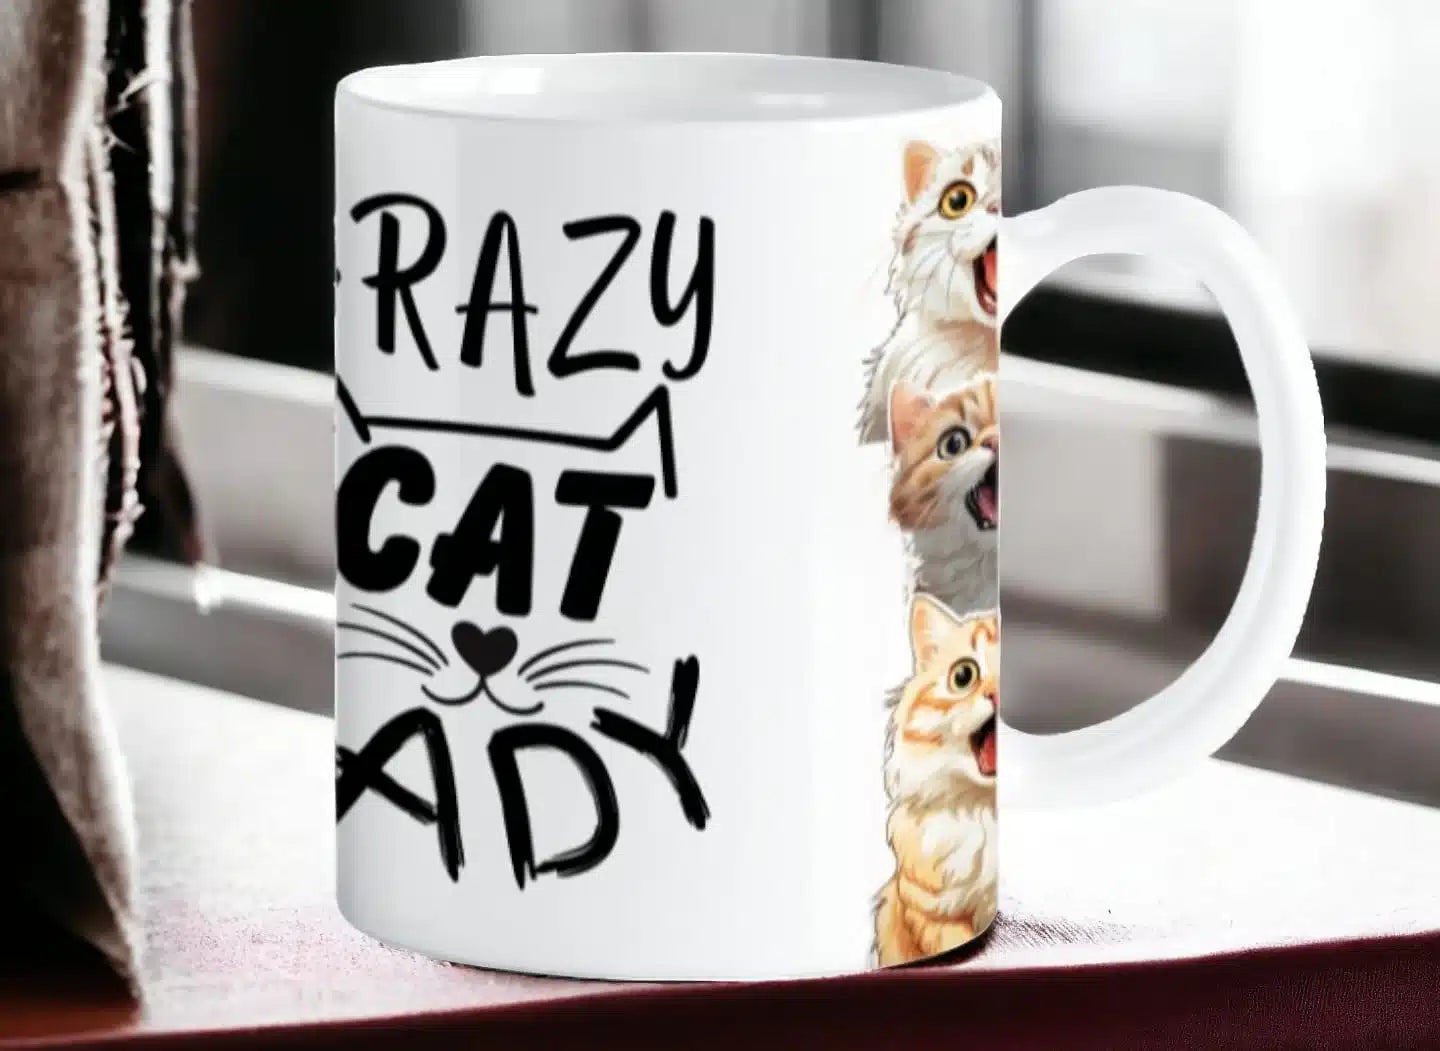 Cana personalizata, Crazy cat lady, Ceramica, Alb, 350 ml